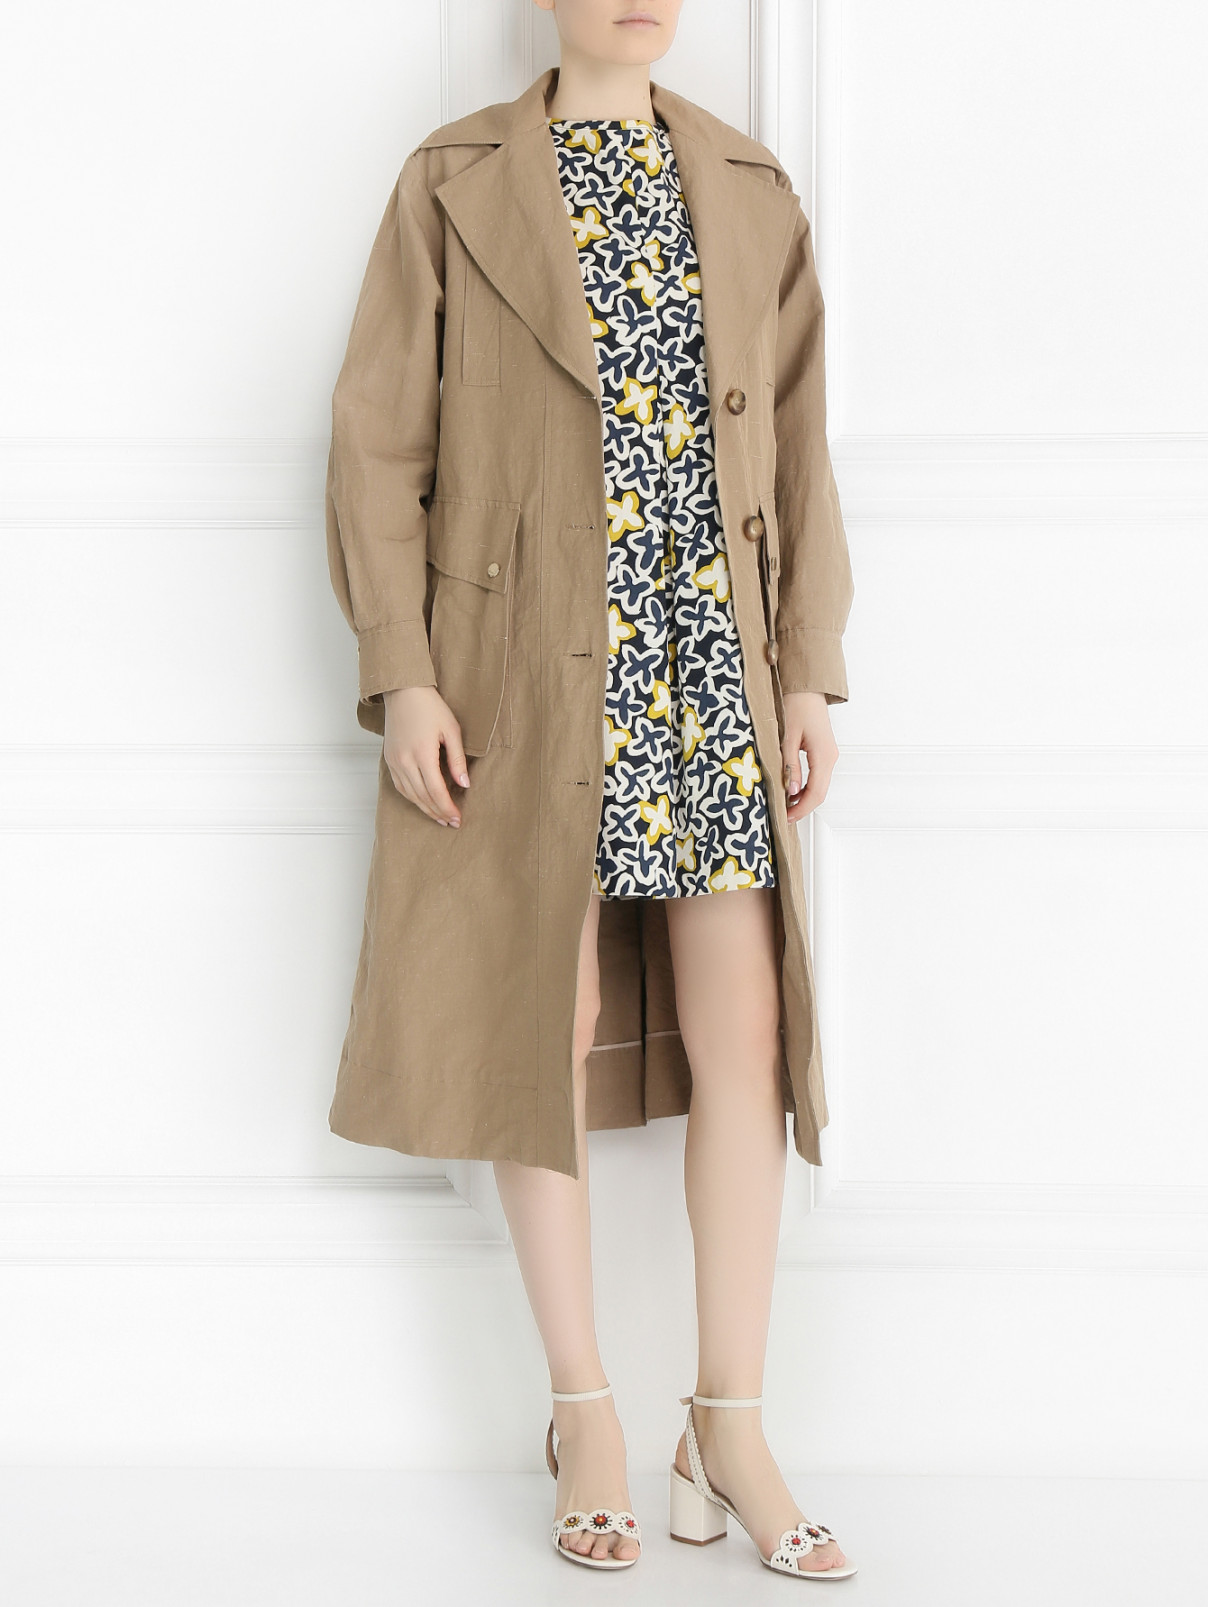 Пальто из хлопка Tara Jarmon  –  Модель Общий вид  – Цвет:  Бежевый